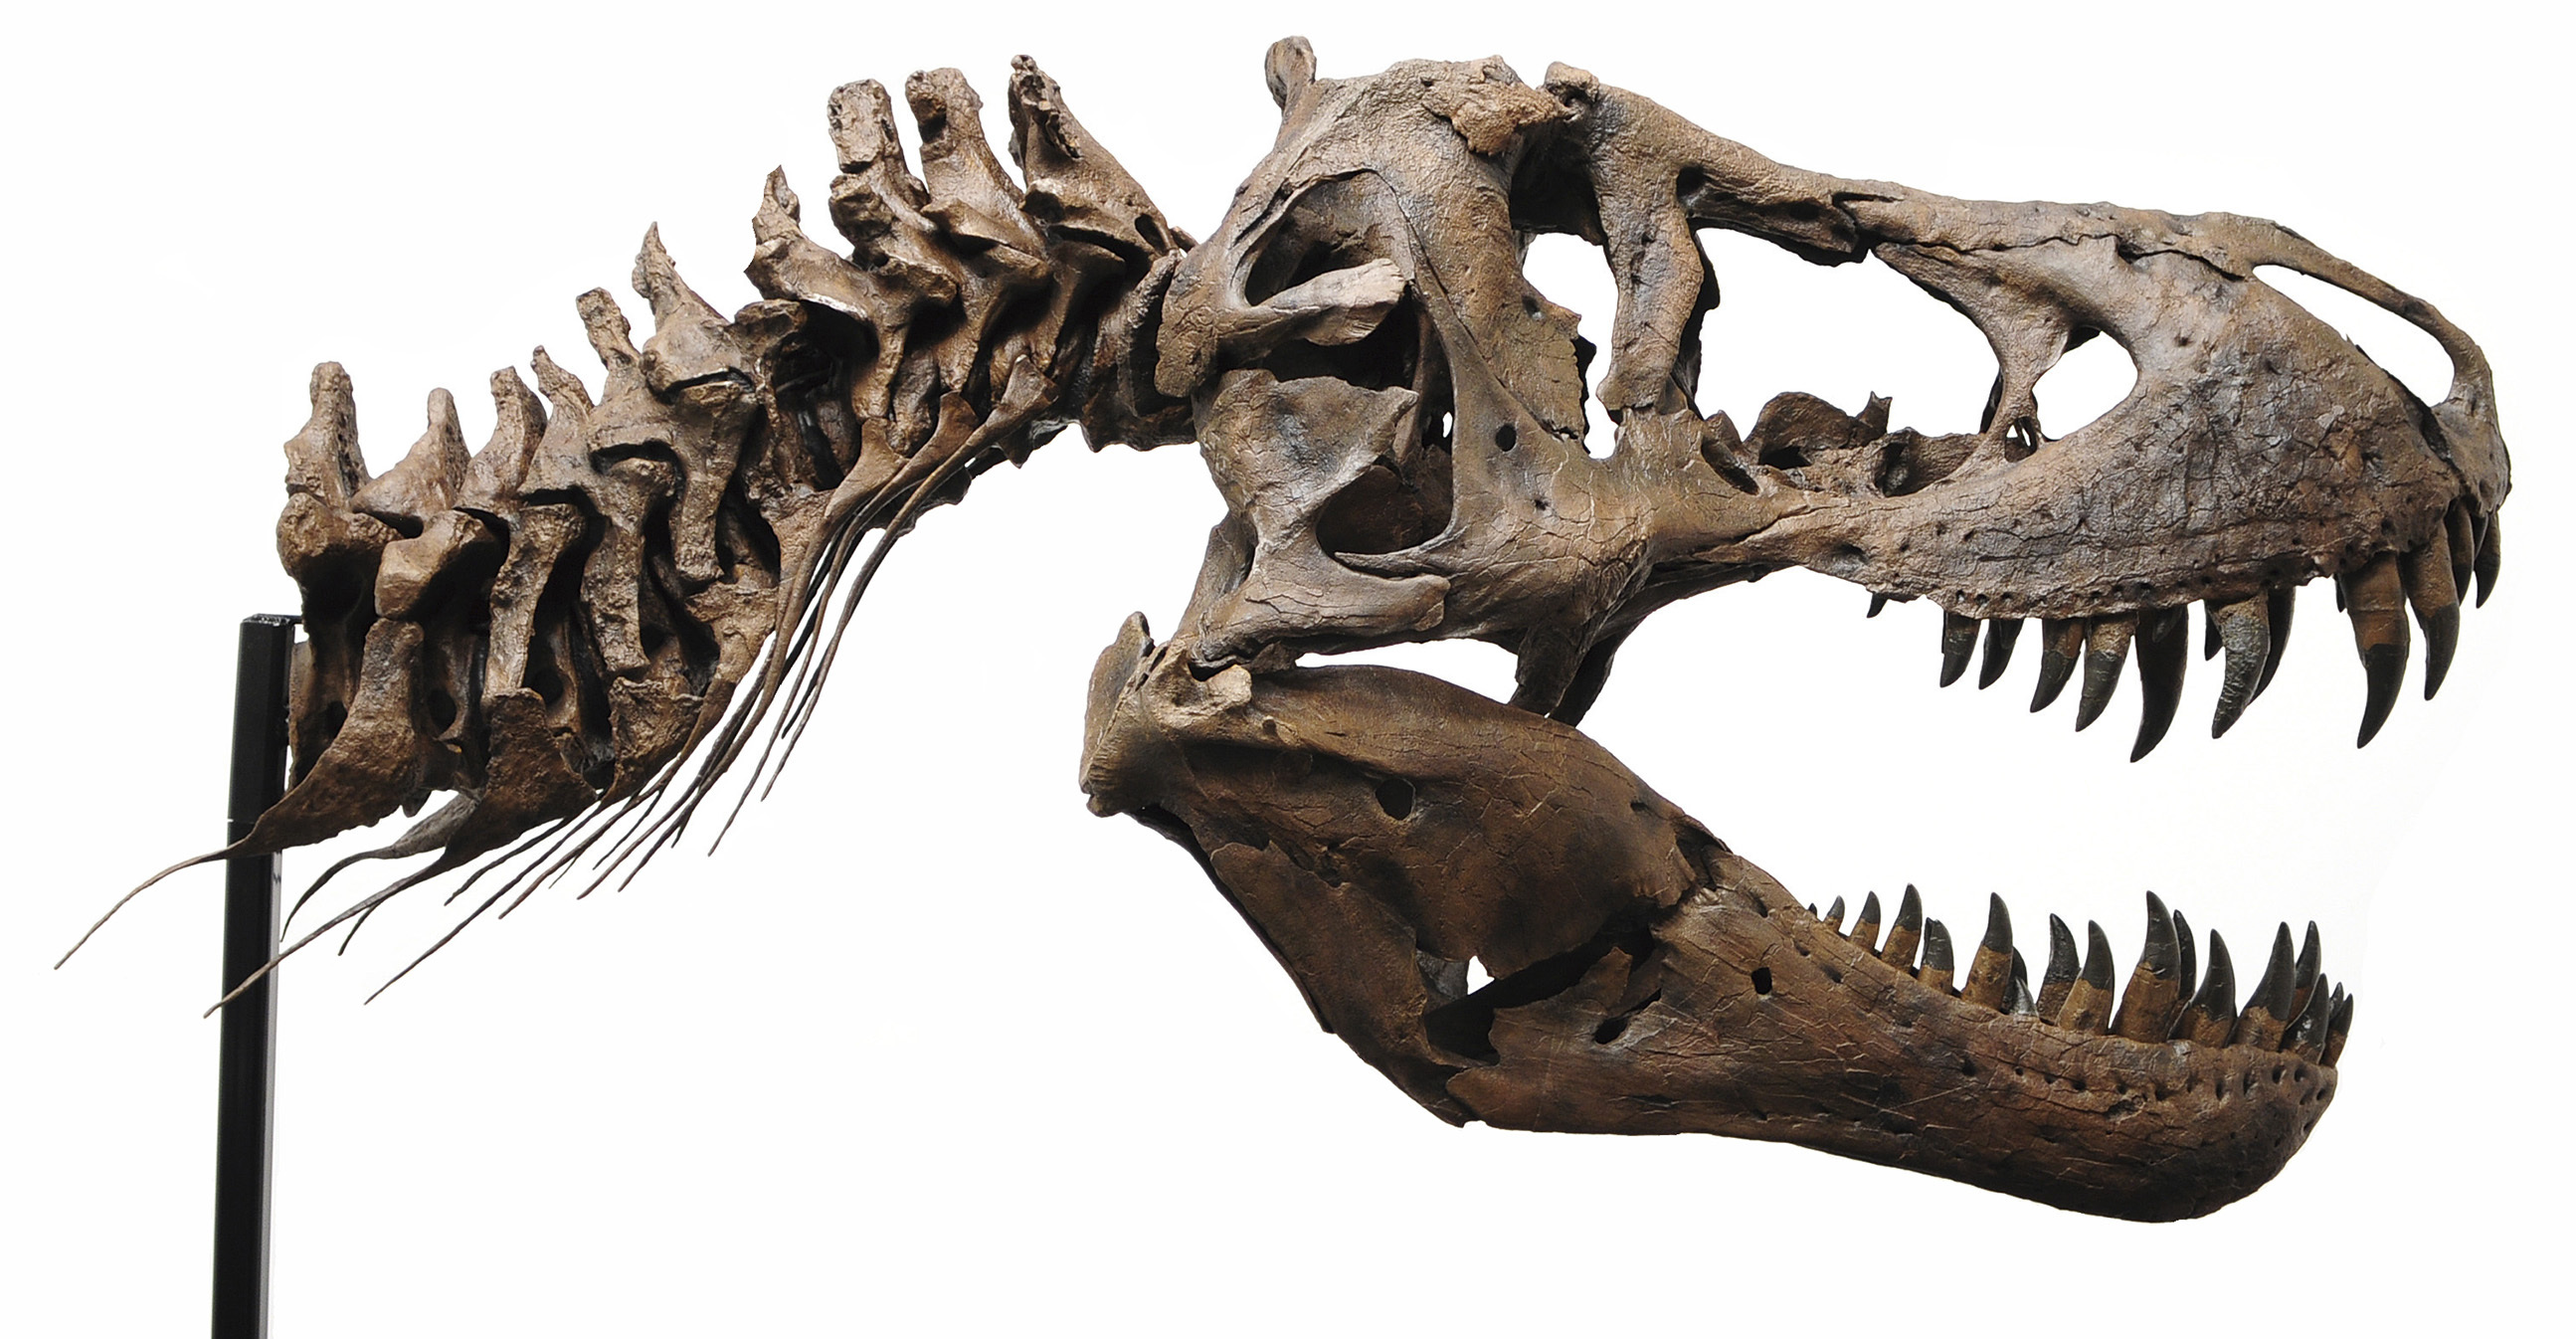 ティラノサウルスの頭骨(後期白亜紀、所蔵:福井県立恐竜博物館)